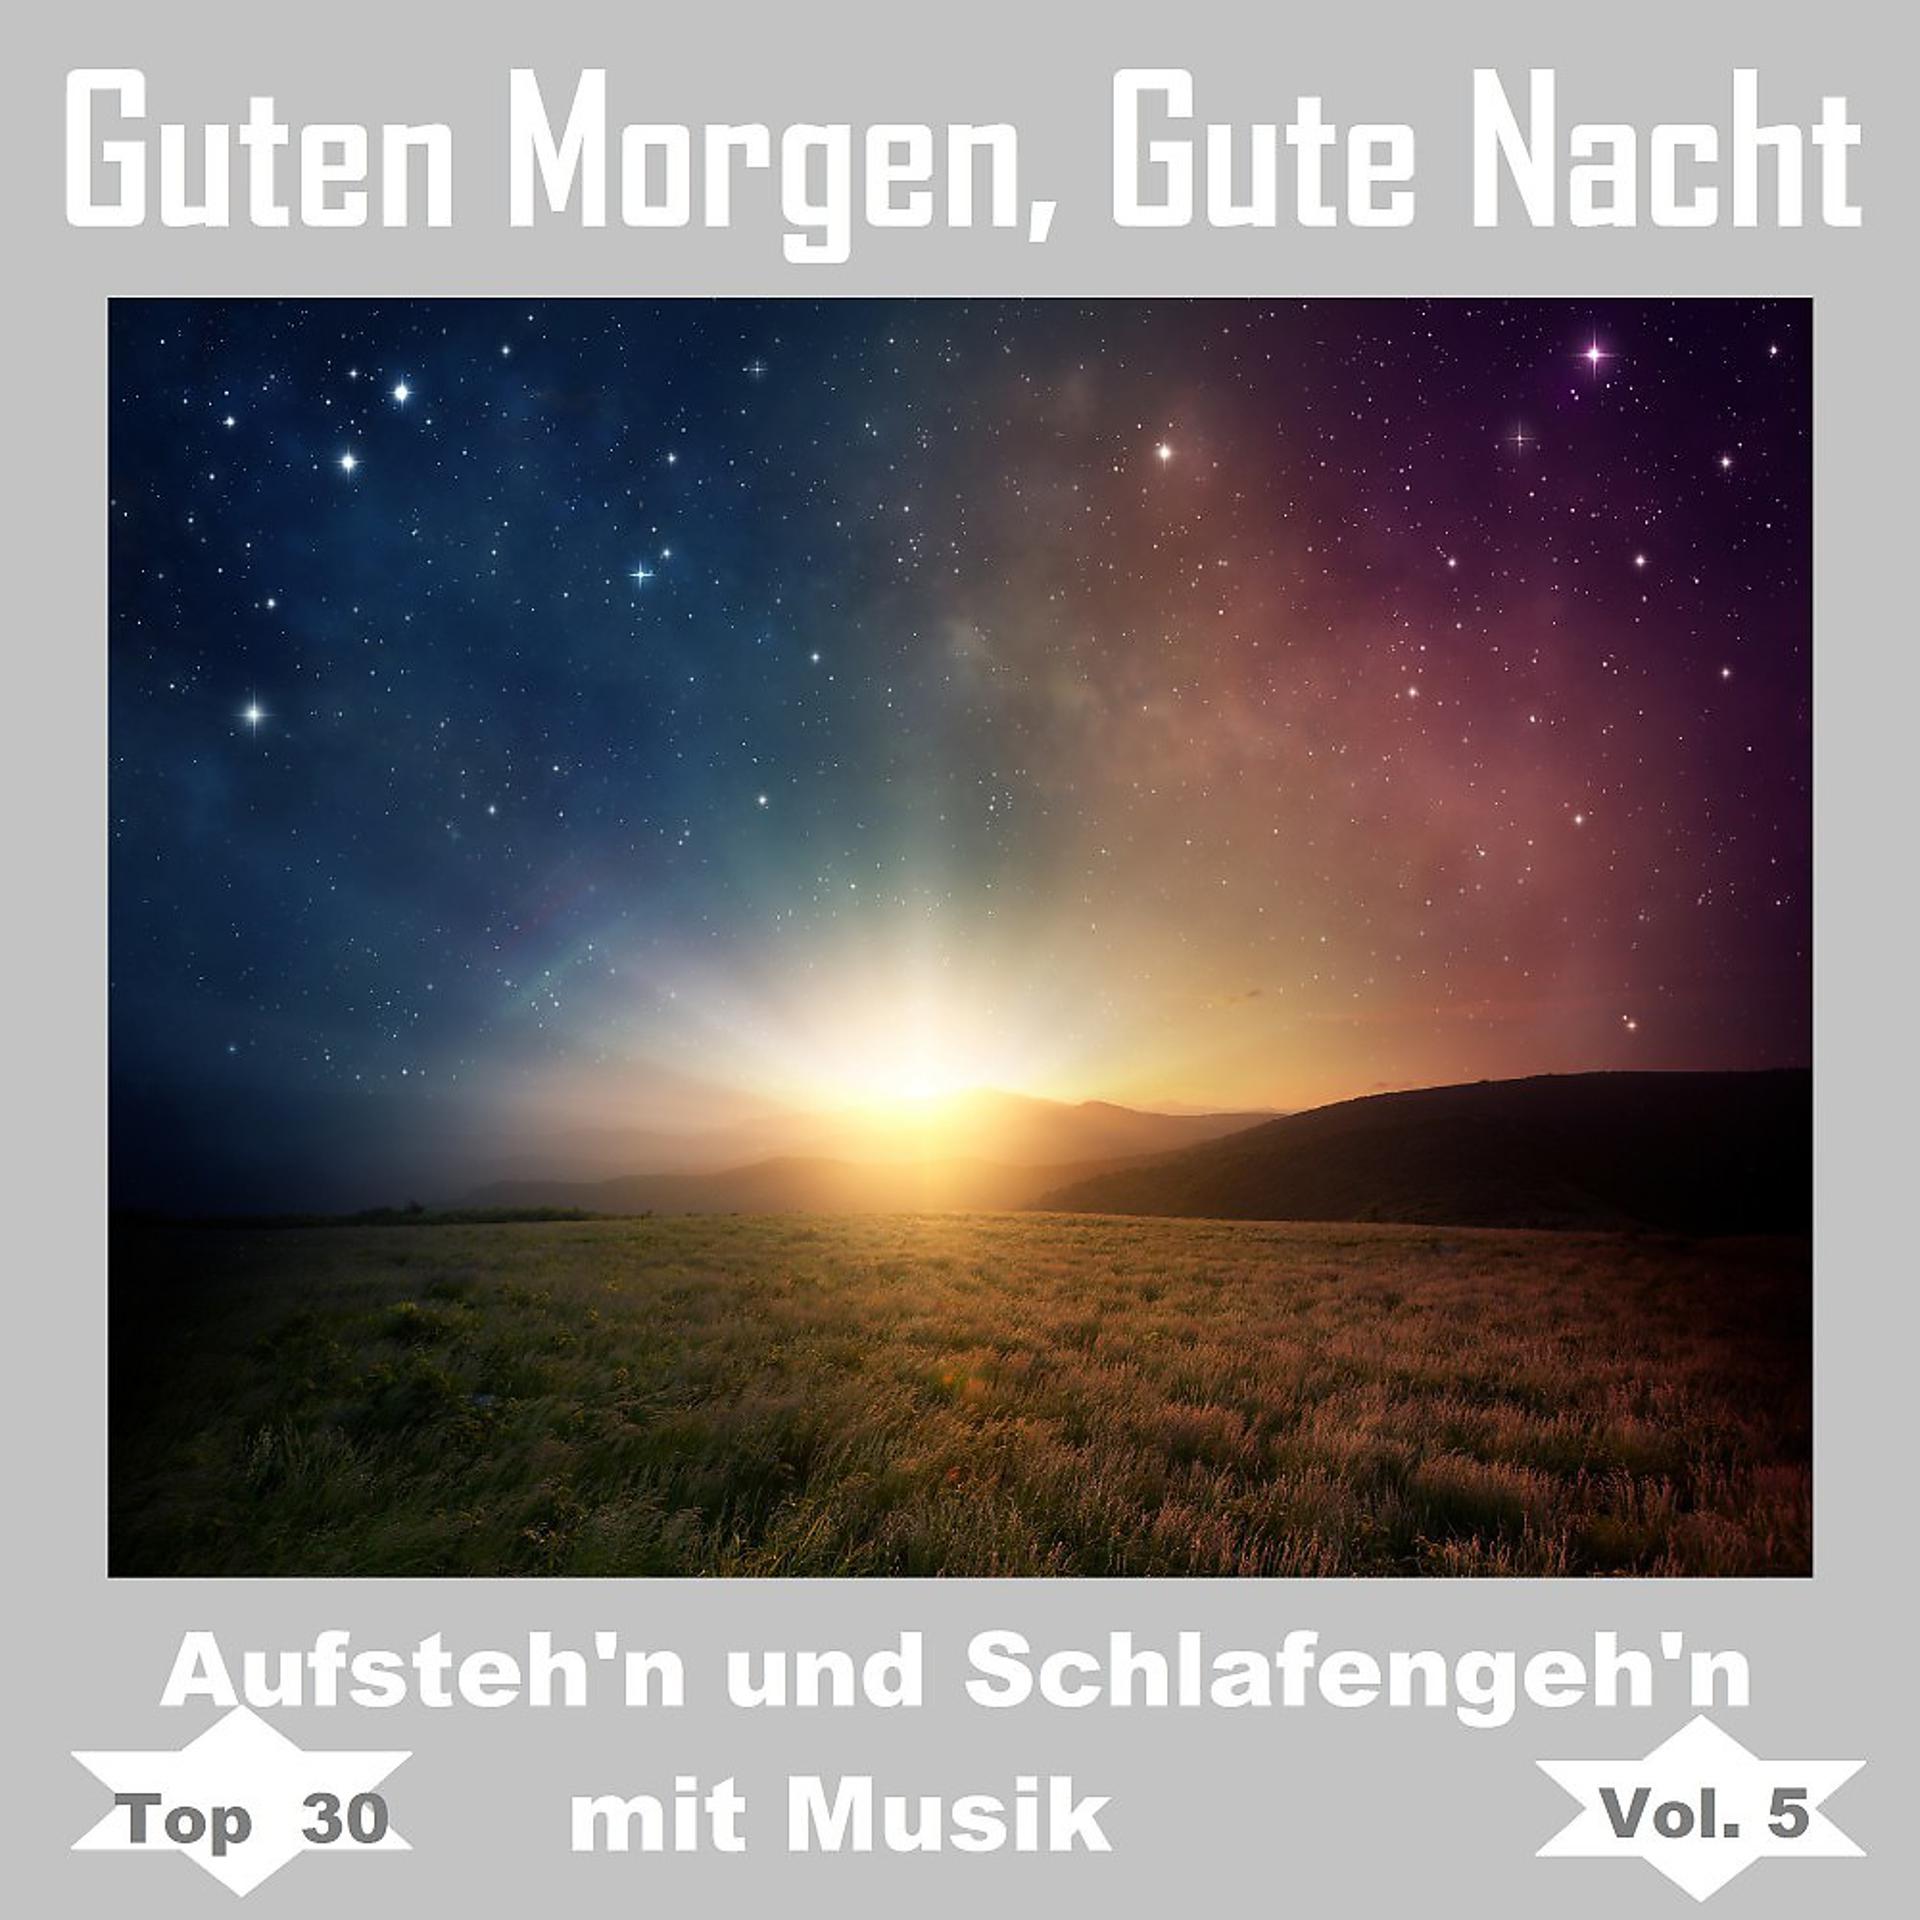 Постер альбома Top 30: Guten Morgen, gute Nacht - Aufsteh'n und schlafengeh'n mit Musik, Vol. 5